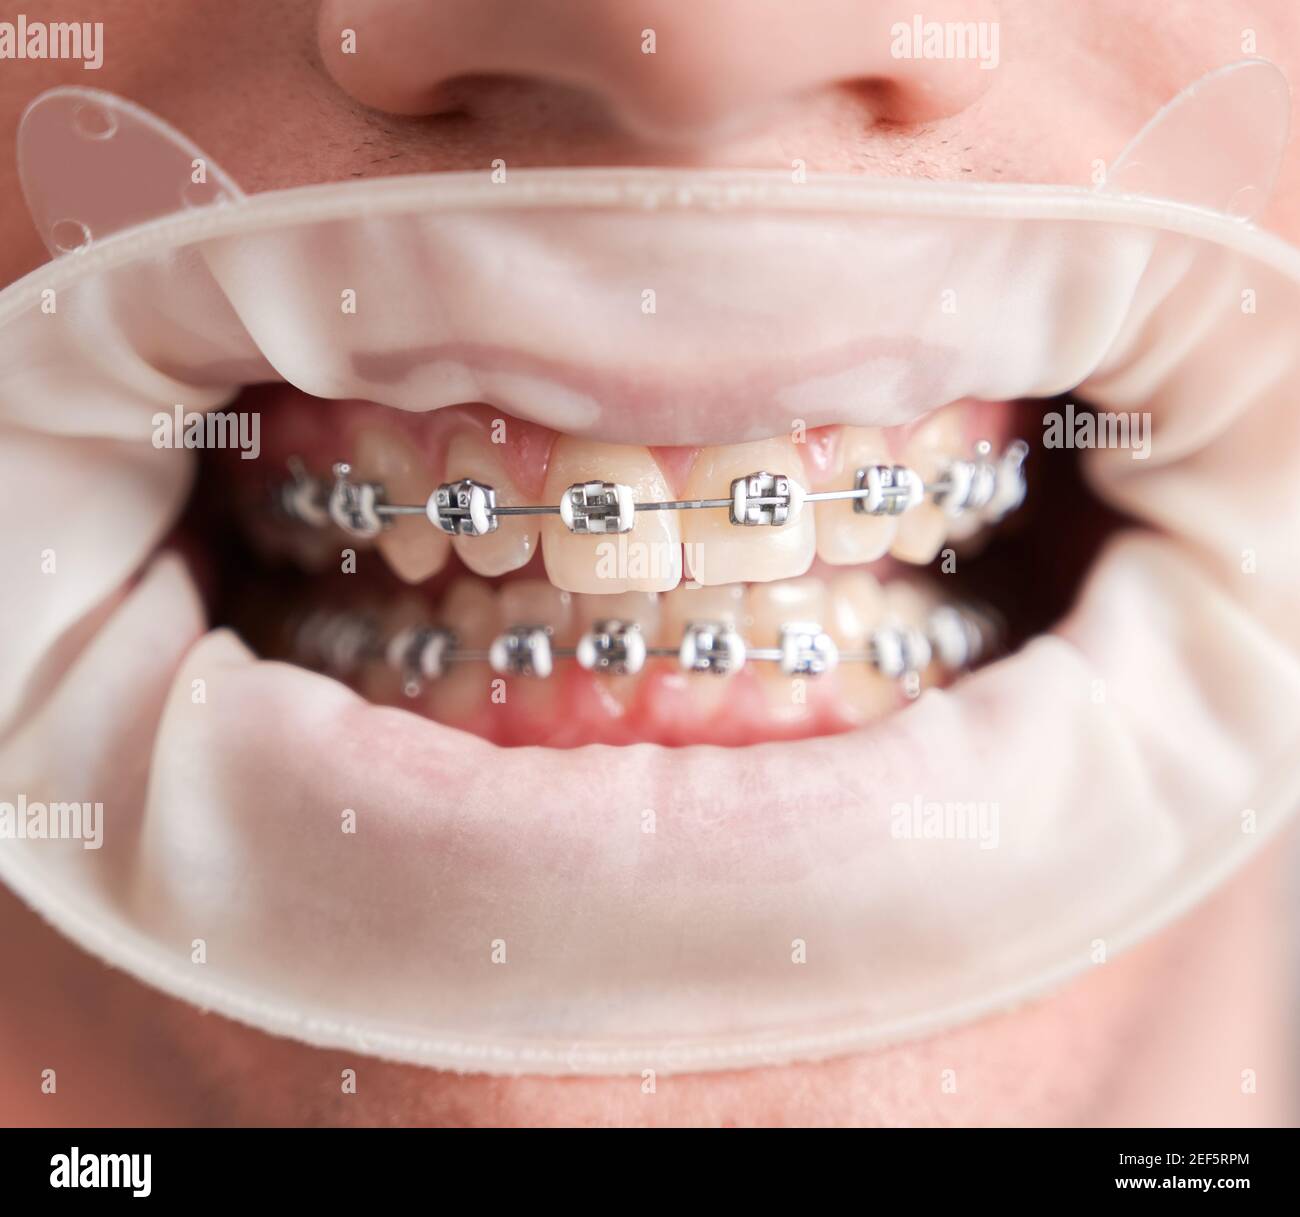 Gros plan d'un jeune homme qui fait la démonstration de dents avec des bretelles métalliques filaires. Des dents droites et saines avec des bretelles orthodontiques et un cercueil blanc. Concept de la dentisterie, de la stomatologie et du traitement orthodontique. Banque D'Images